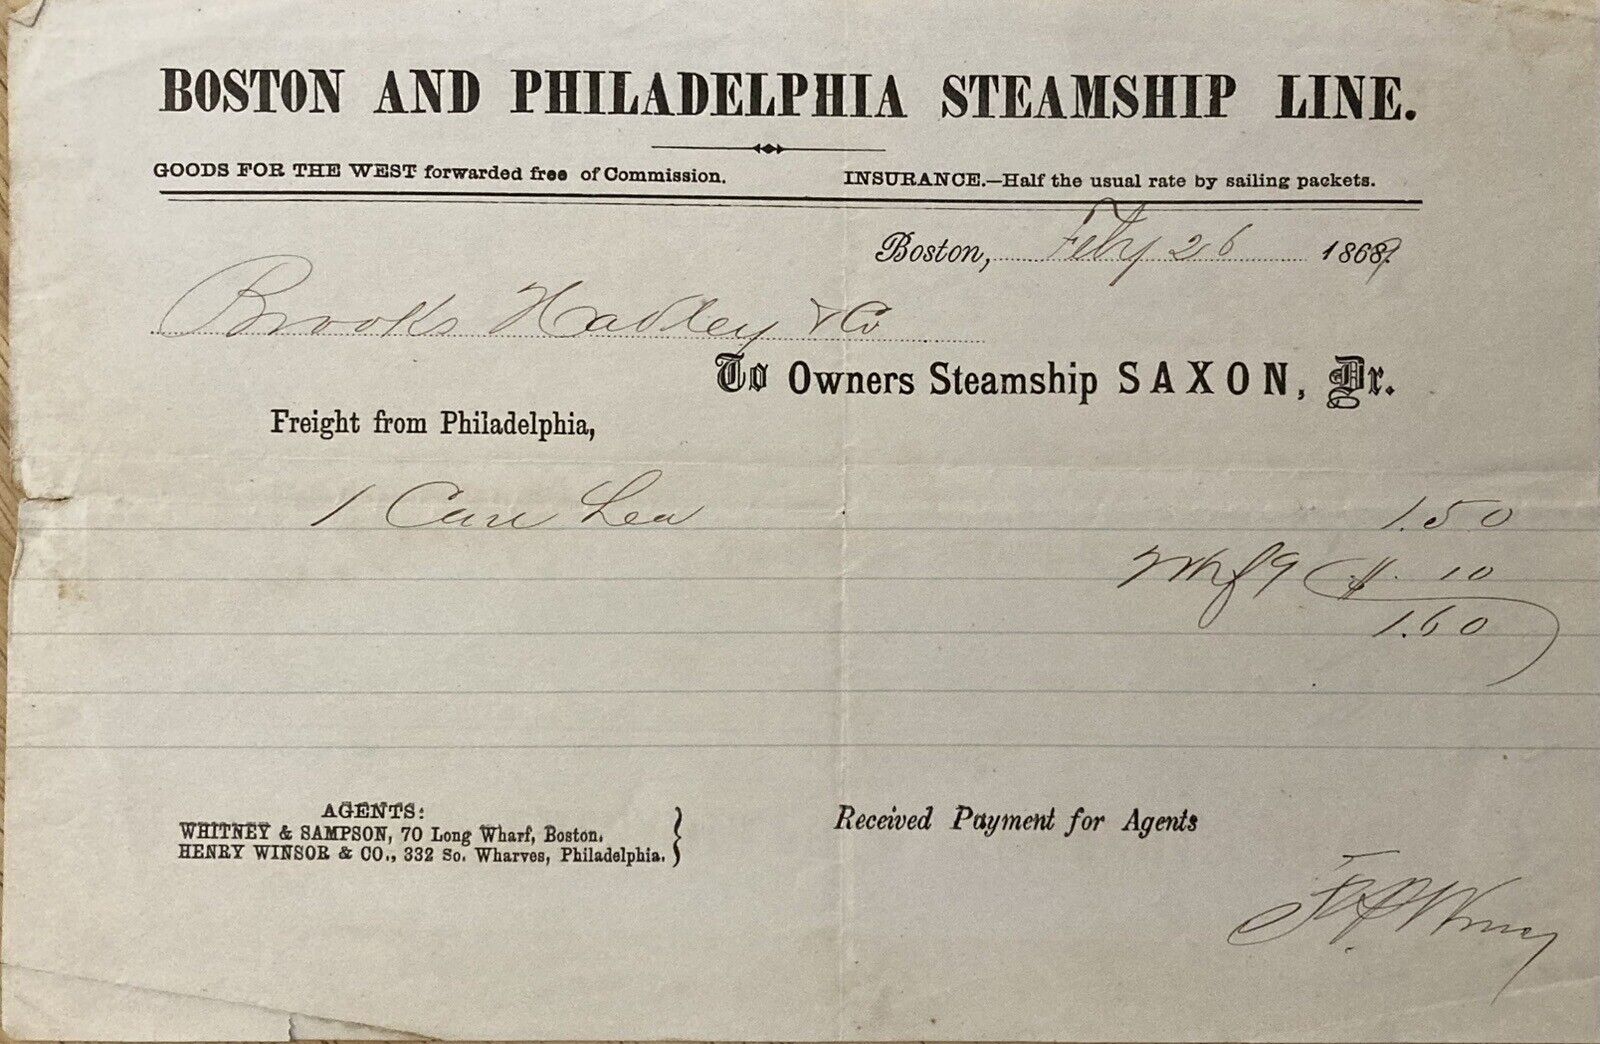 1869 BOSTON & PHIL., STEAMSHIP LINE, BOSTON, MASS. SAXON STEAMSHIP CARGO